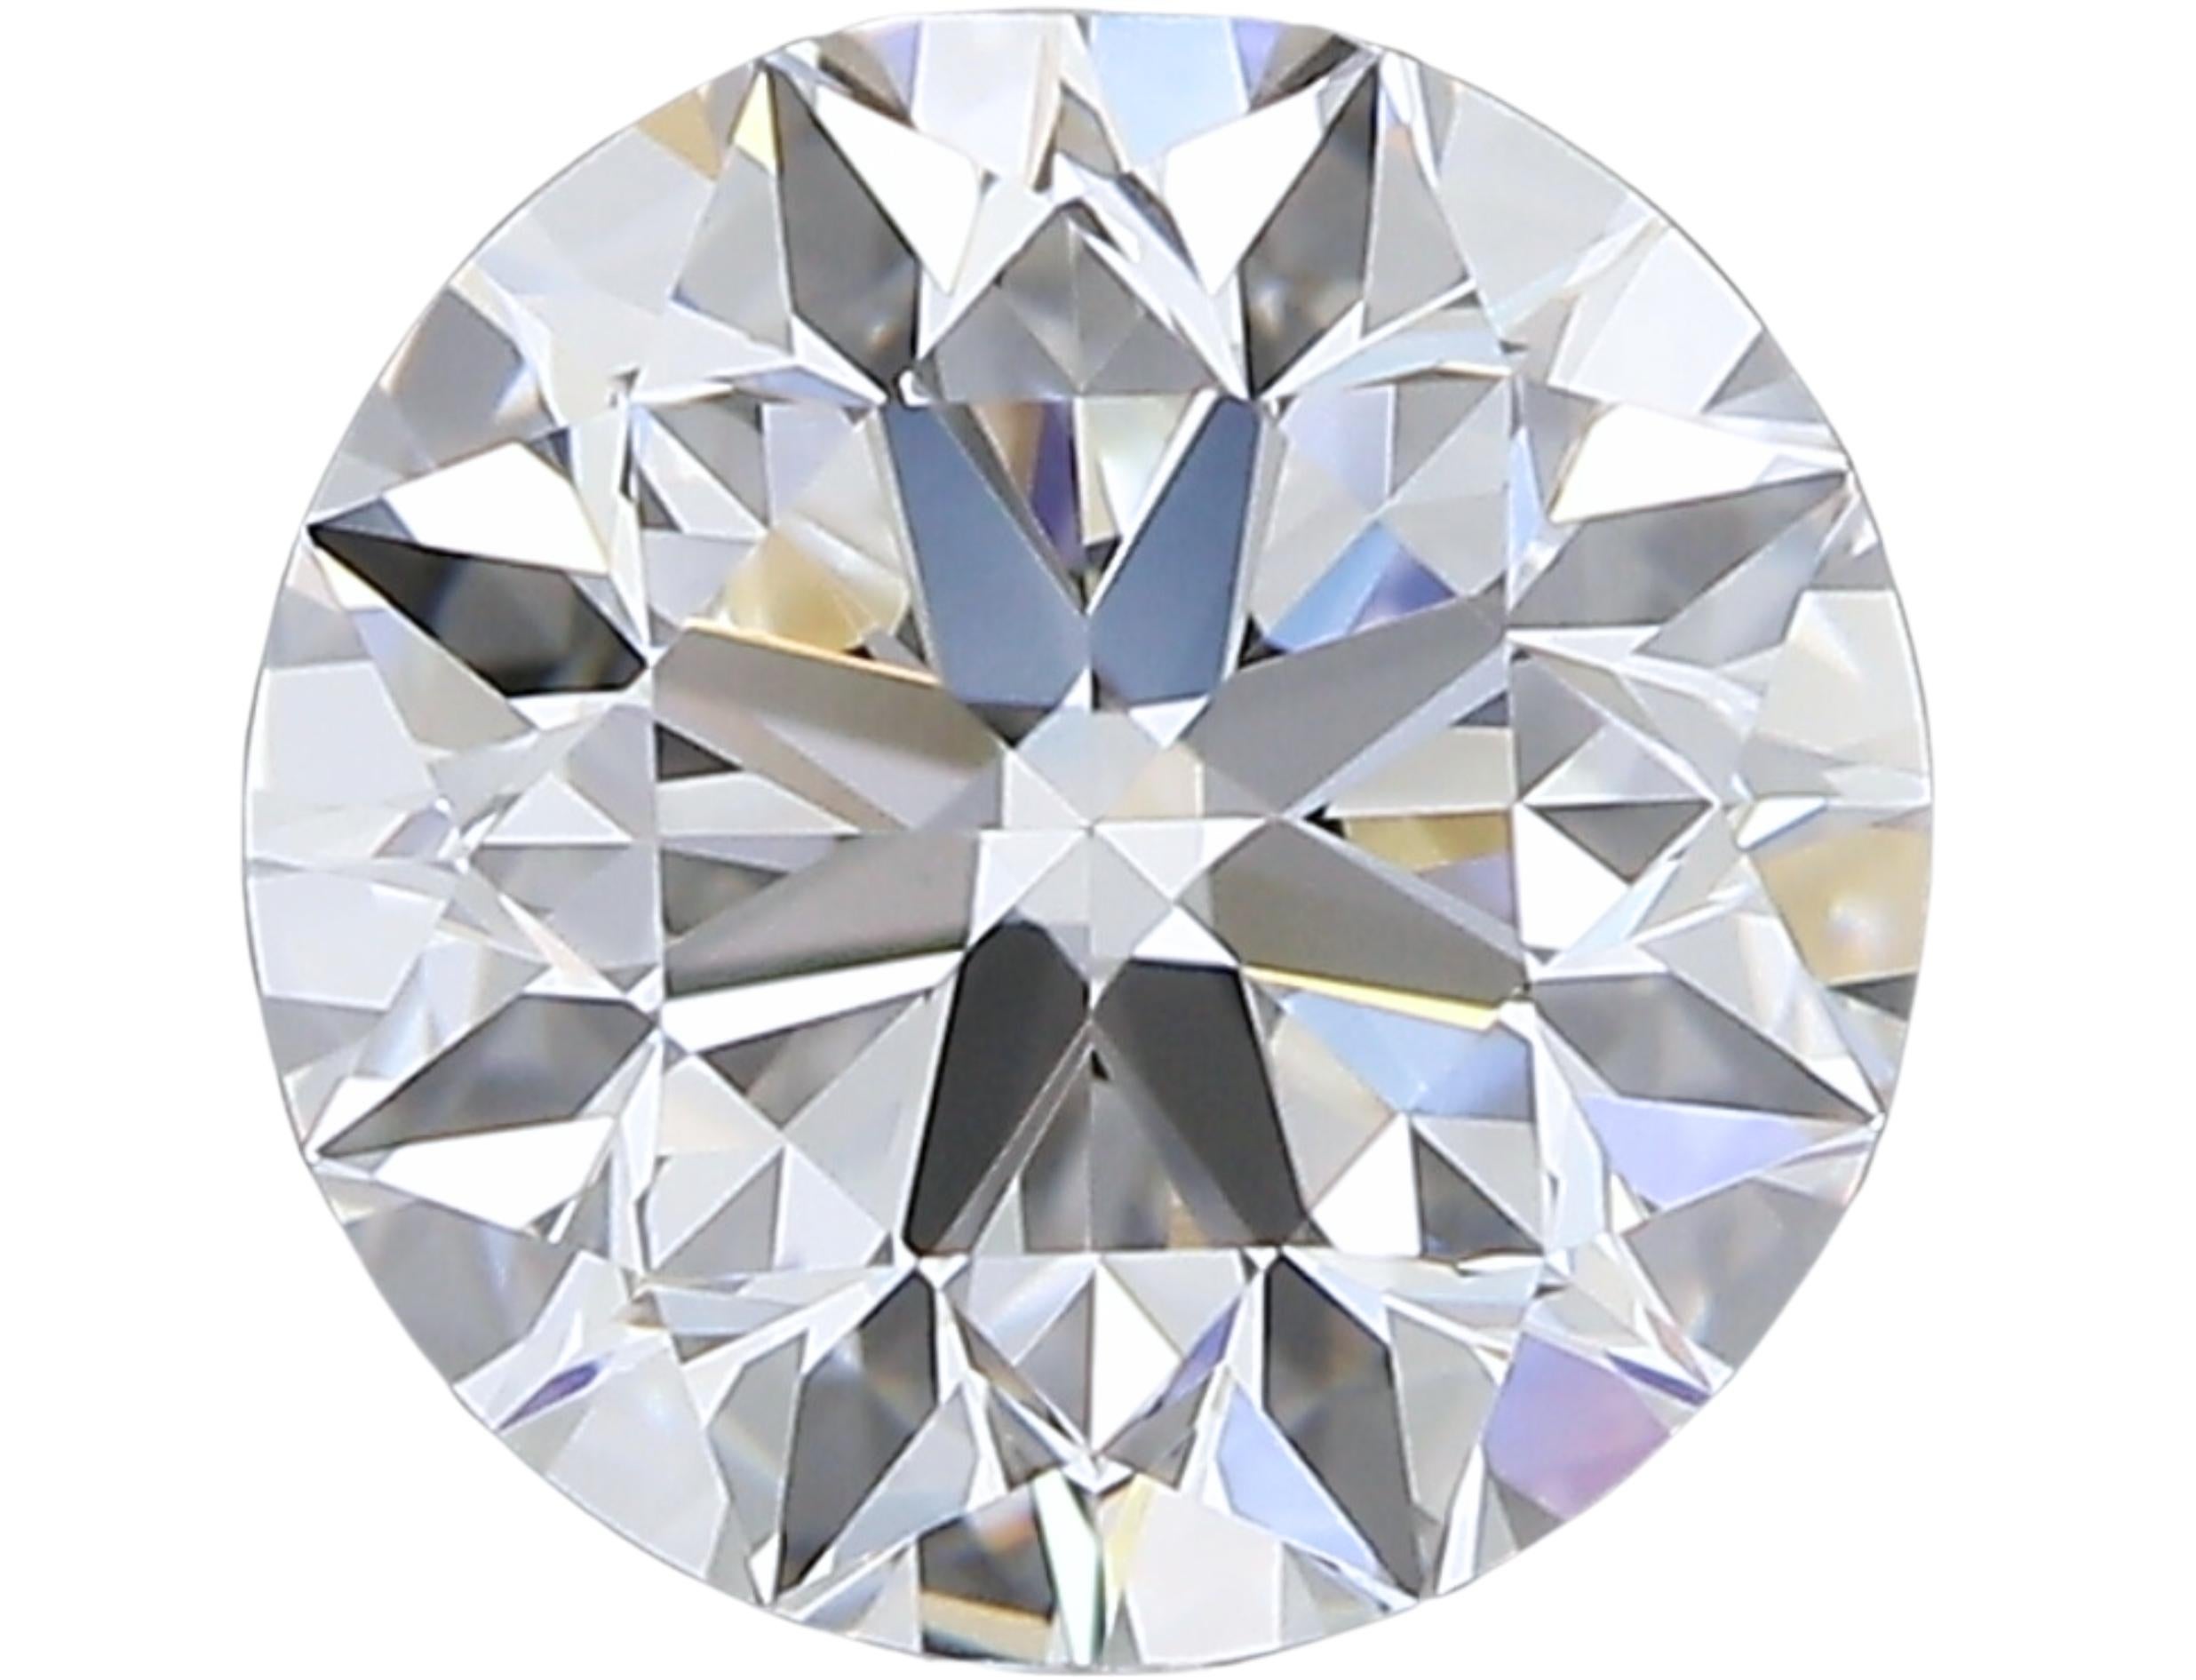 Natürlicher Schliff Runder Diamant mit einem Gewicht von 0,90 Karat H VVS1 Ausgezeichneter Schliff. Dieser Diamant wird mit GIA-Zertifikat und Laserbeschriftungsnummer geliefert

Dieser exquisite Diamant hat ein bemerkenswertes Gewicht von 0,90